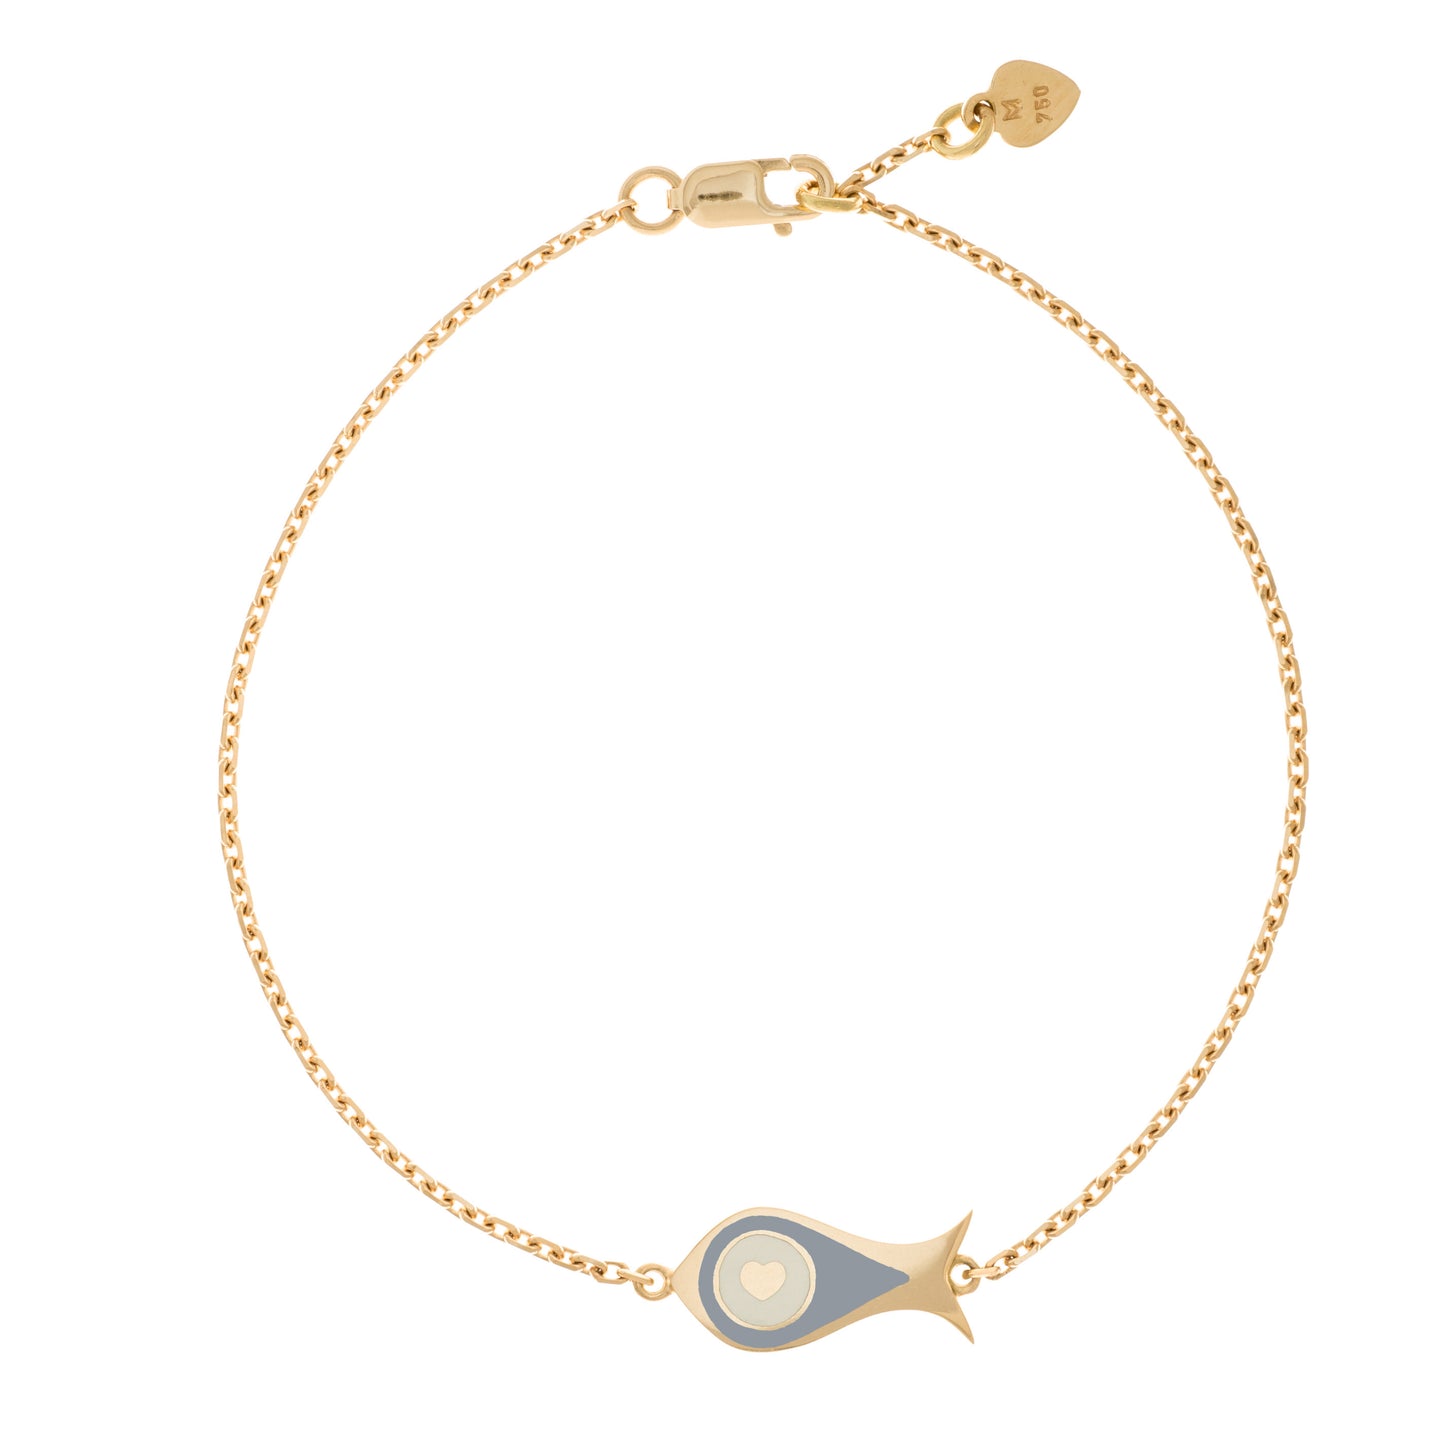 MORA bijoux, bracelet Poisson-coeur lchthys émaillé gris d'un diamètre de 15mm en or jaune 18 carats. Longueur de la chaîne 16cm avec un petit coeur en or jaune 18 carats soudé sur le fermoir.